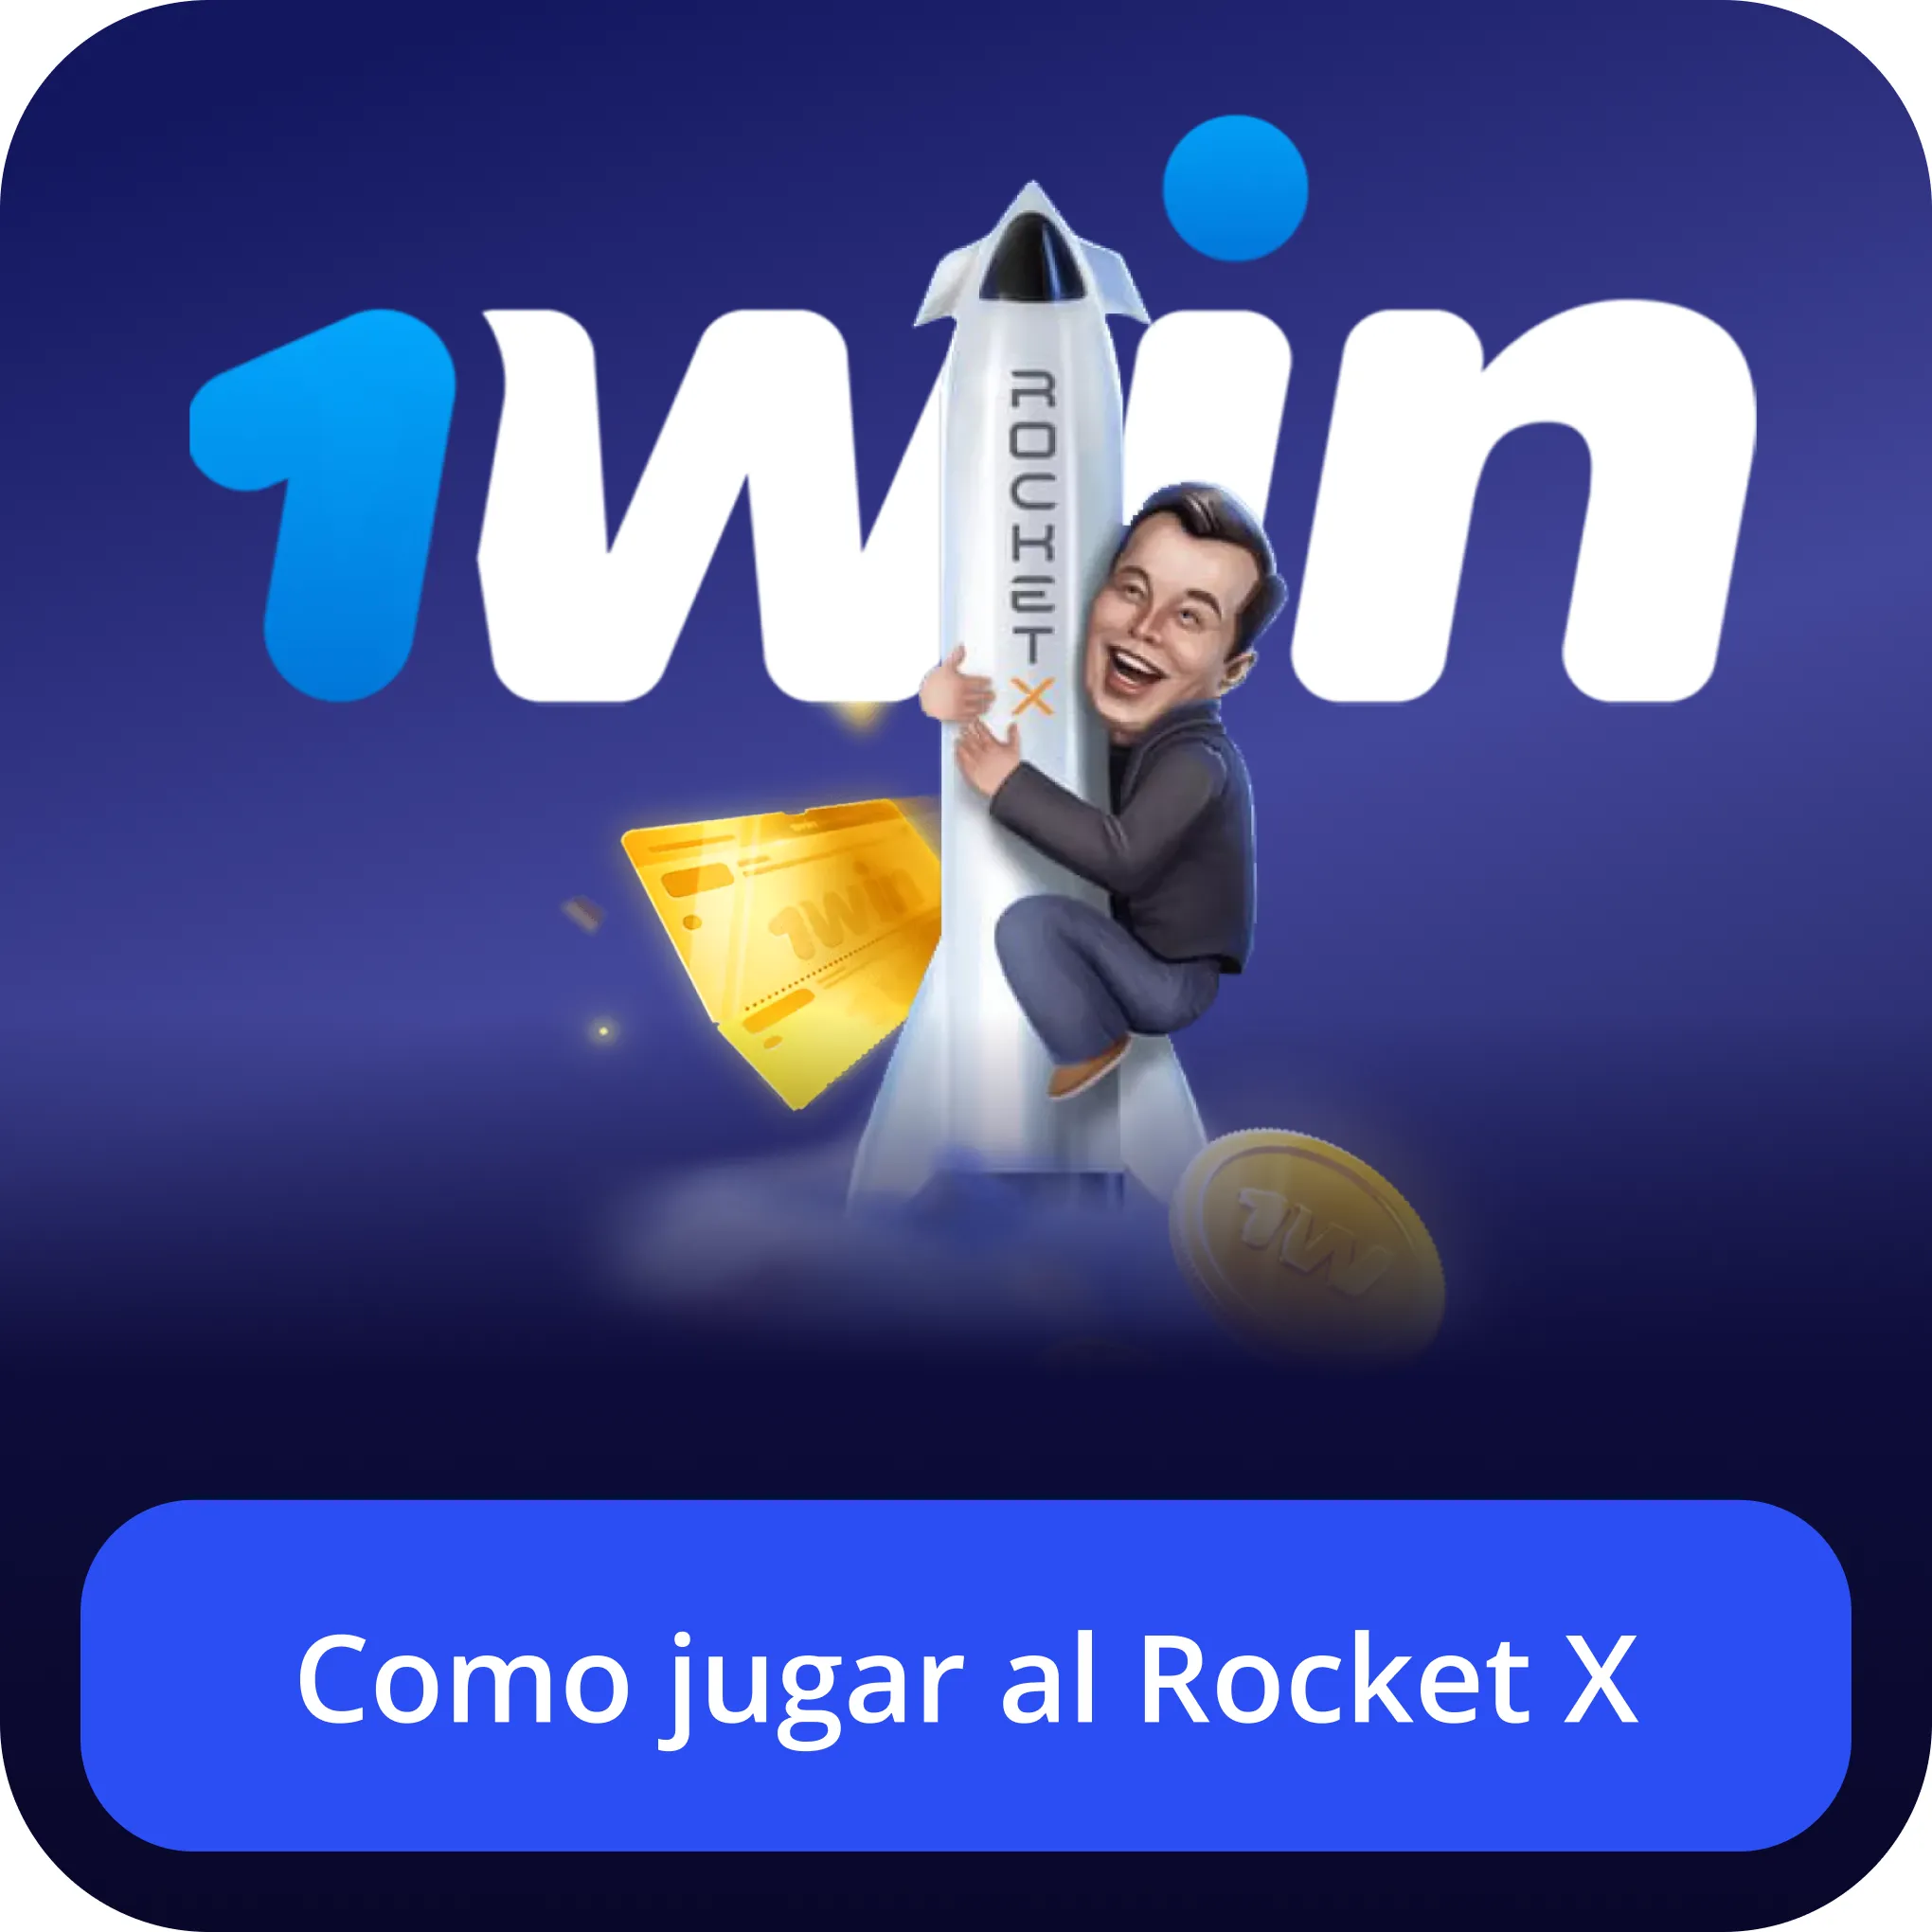 como jugar rocket x 1win